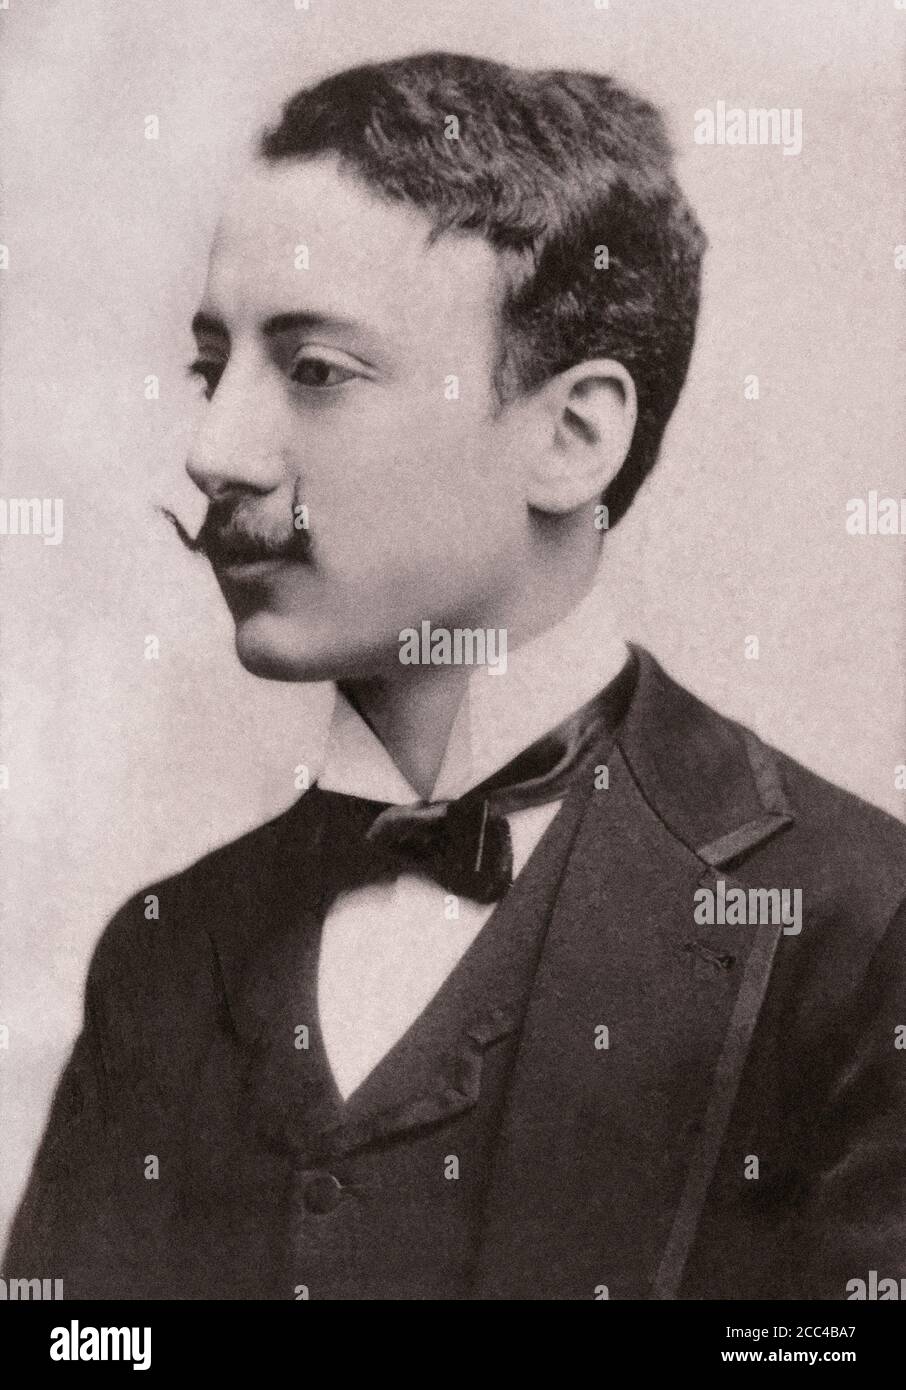 Le général Gabriele d'Annunzio, prince de Montenevoso (1863 – 1938), parfois orthographié d'Annunzio, était un poète, dramaturge et journaliste italien Banque D'Images